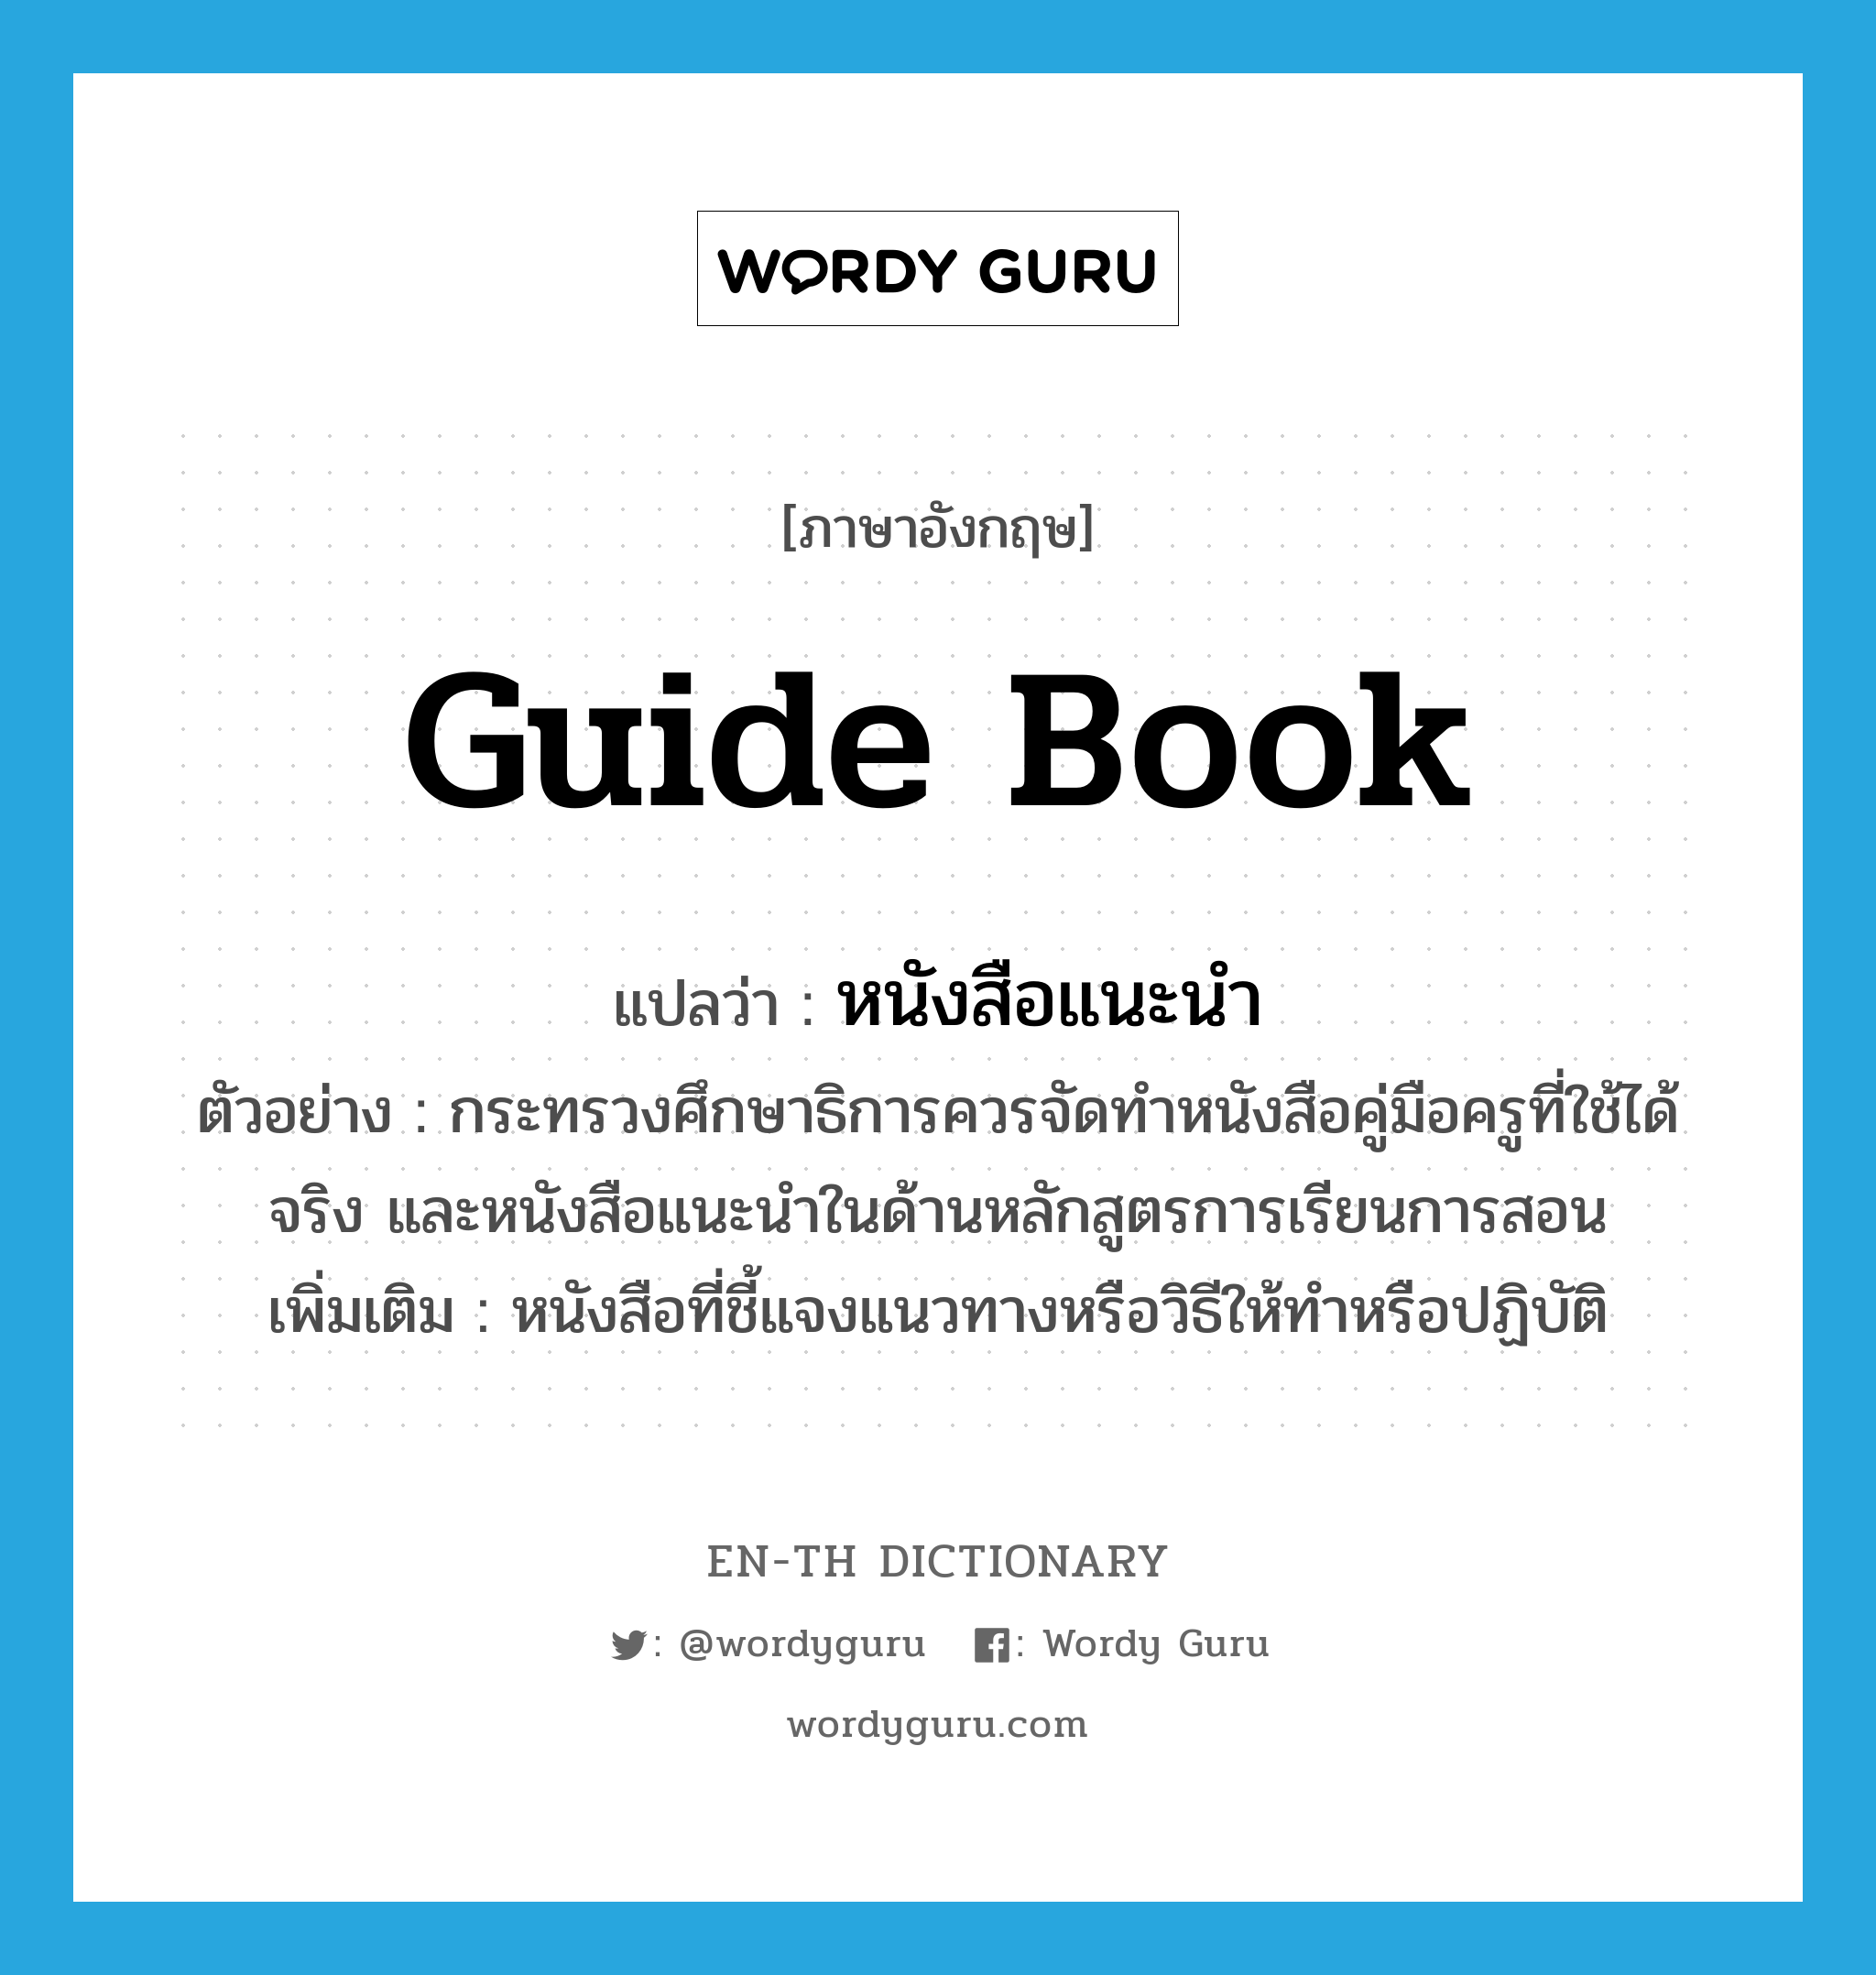 guide book แปลว่า?, คำศัพท์ภาษาอังกฤษ guide book แปลว่า หนังสือแนะนำ ประเภท N ตัวอย่าง กระทรวงศึกษาธิการควรจัดทำหนังสือคู่มือครูที่ใช้ได้จริง และหนังสือแนะนำในด้านหลักสูตรการเรียนการสอน เพิ่มเติม หนังสือที่ชี้แจงแนวทางหรือวิธีให้ทำหรือปฏิบัติ หมวด N